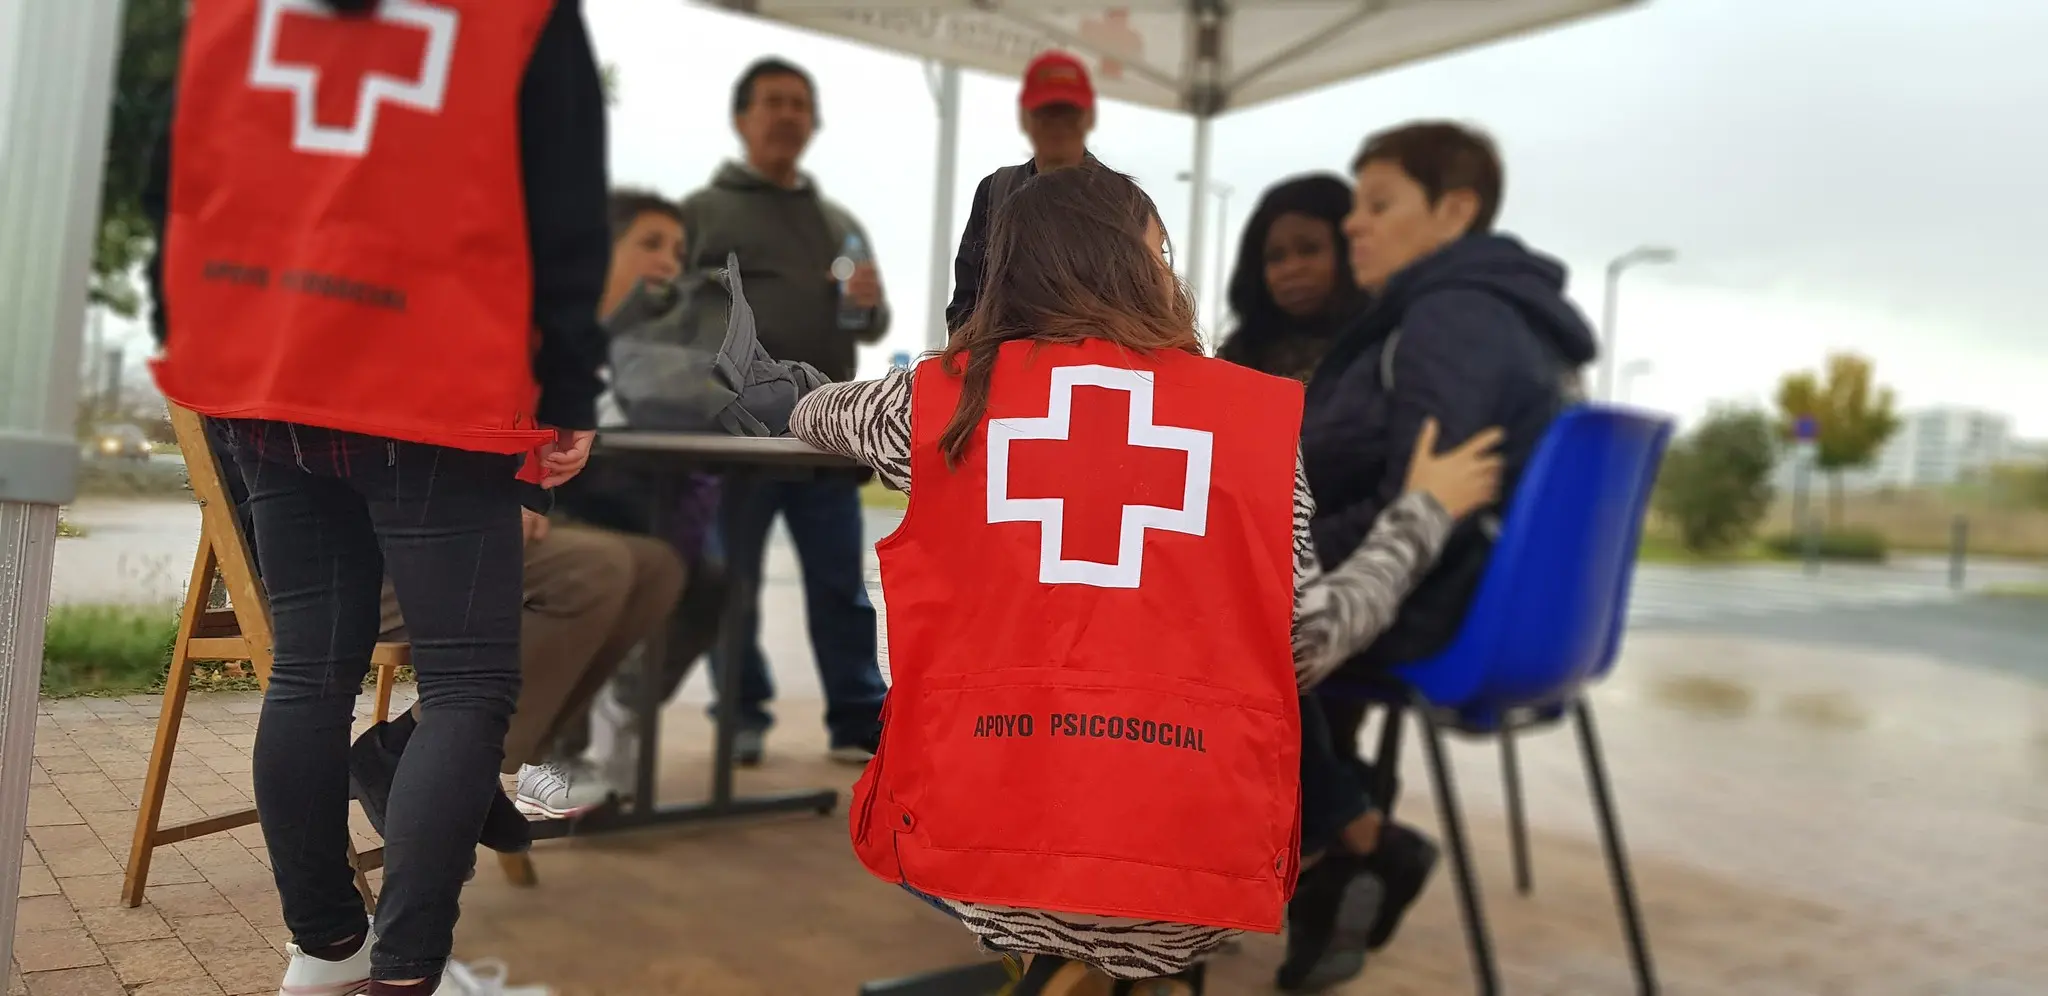 apoyo psicologico cruz roja - Cuáles son los servicios que ofrece la Cruz Roja